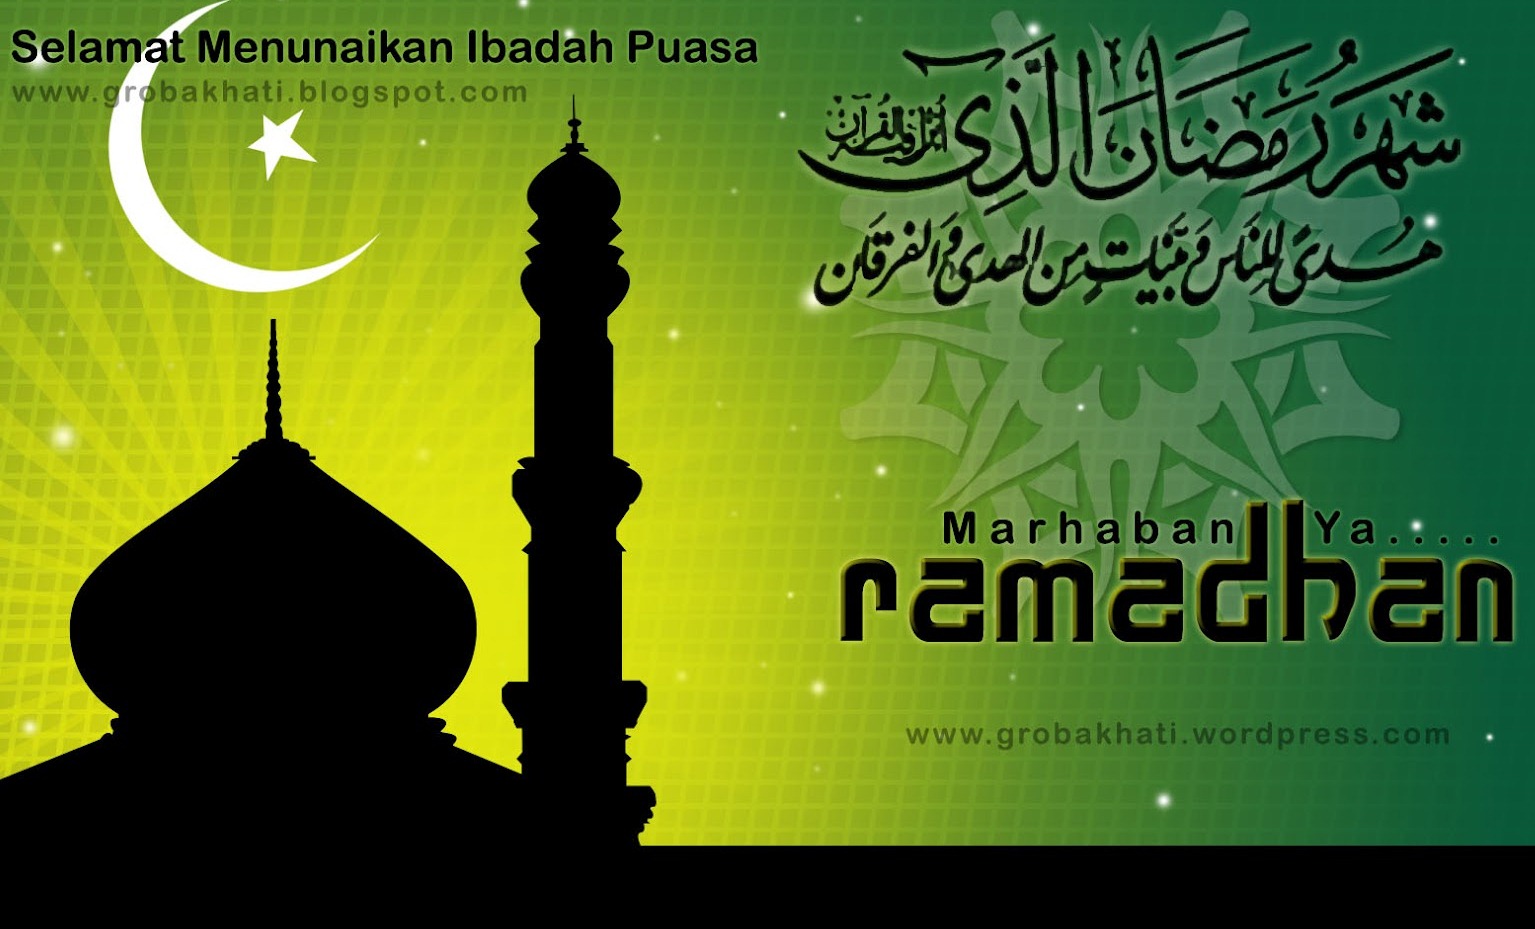 26 Kata Mutiara Ramadhan Bahasa Inggris Images Kata Mutiara Terbaru